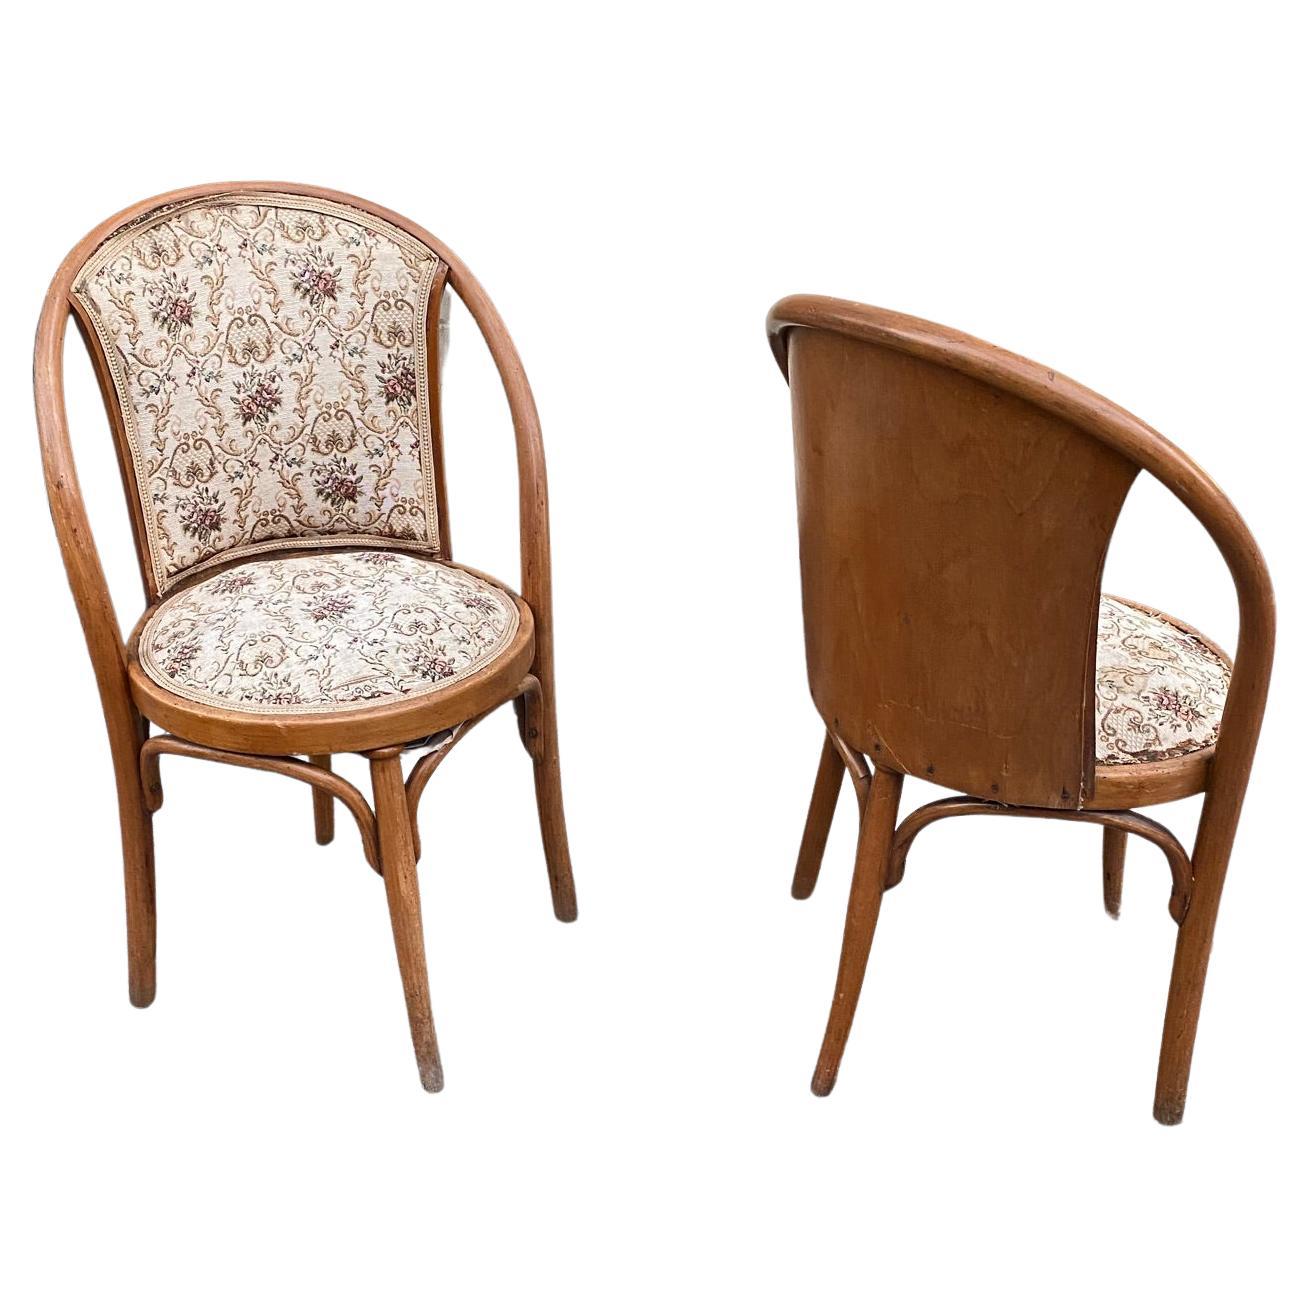 2 chaises de style sécession, vers 1900